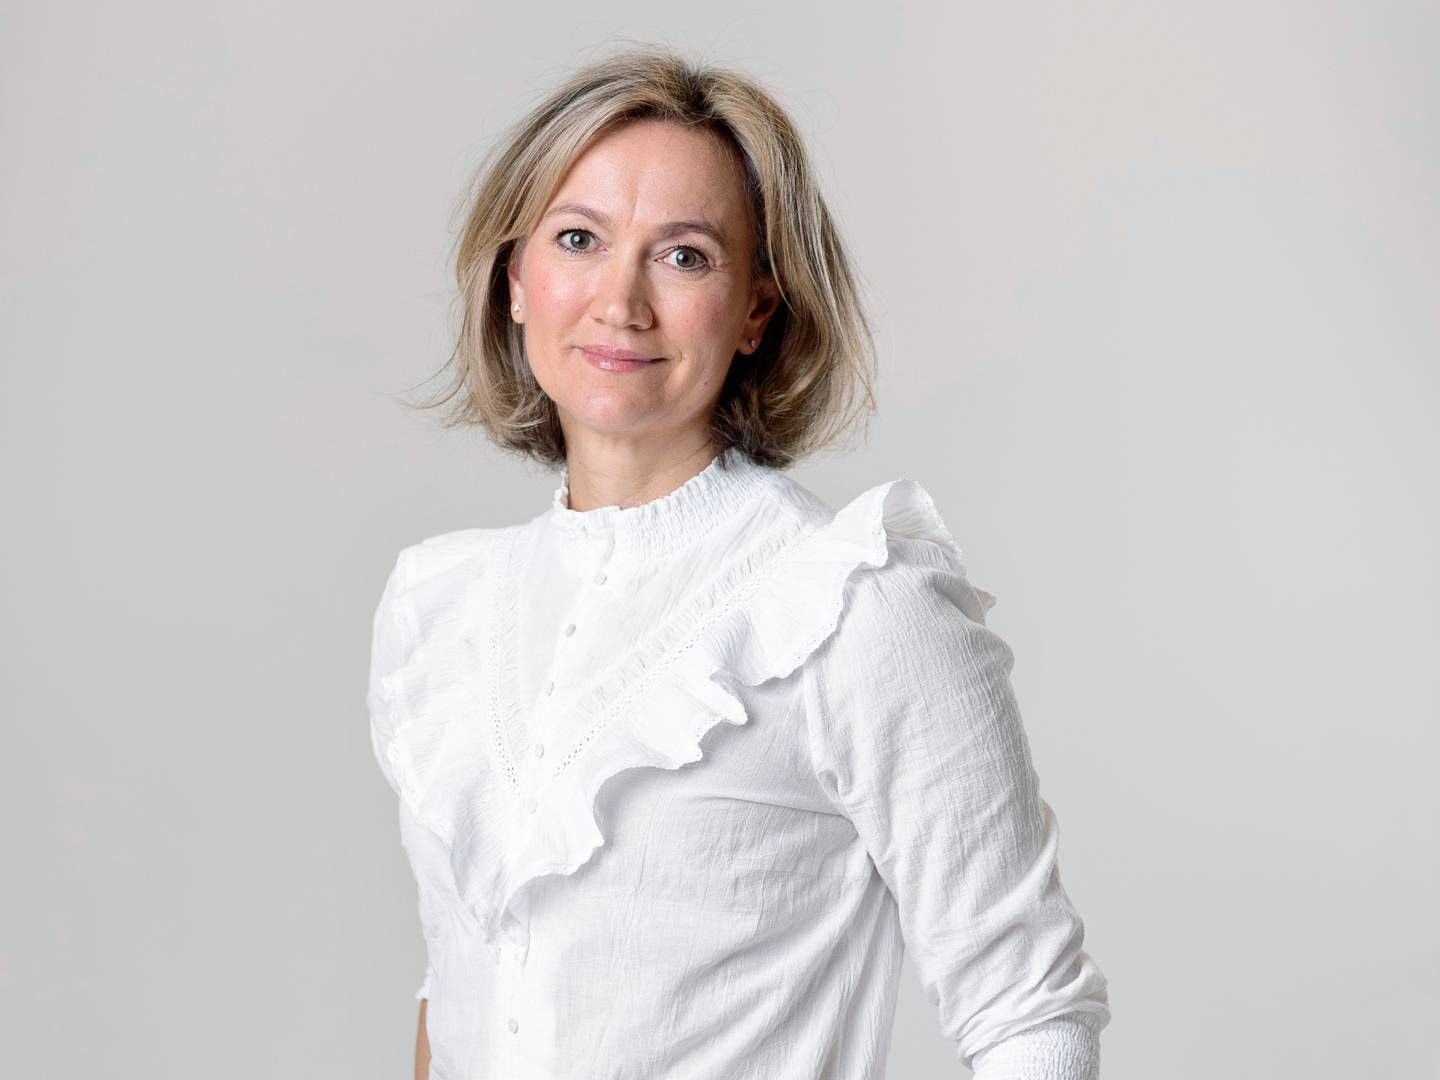 Det nye medieselskab får navnet Schibsted Media og får Siv Juvik Tveitnes som adm. direktør. Hun er i dag topchef for Schibsted News Media. | Foto: Pr/schibsted